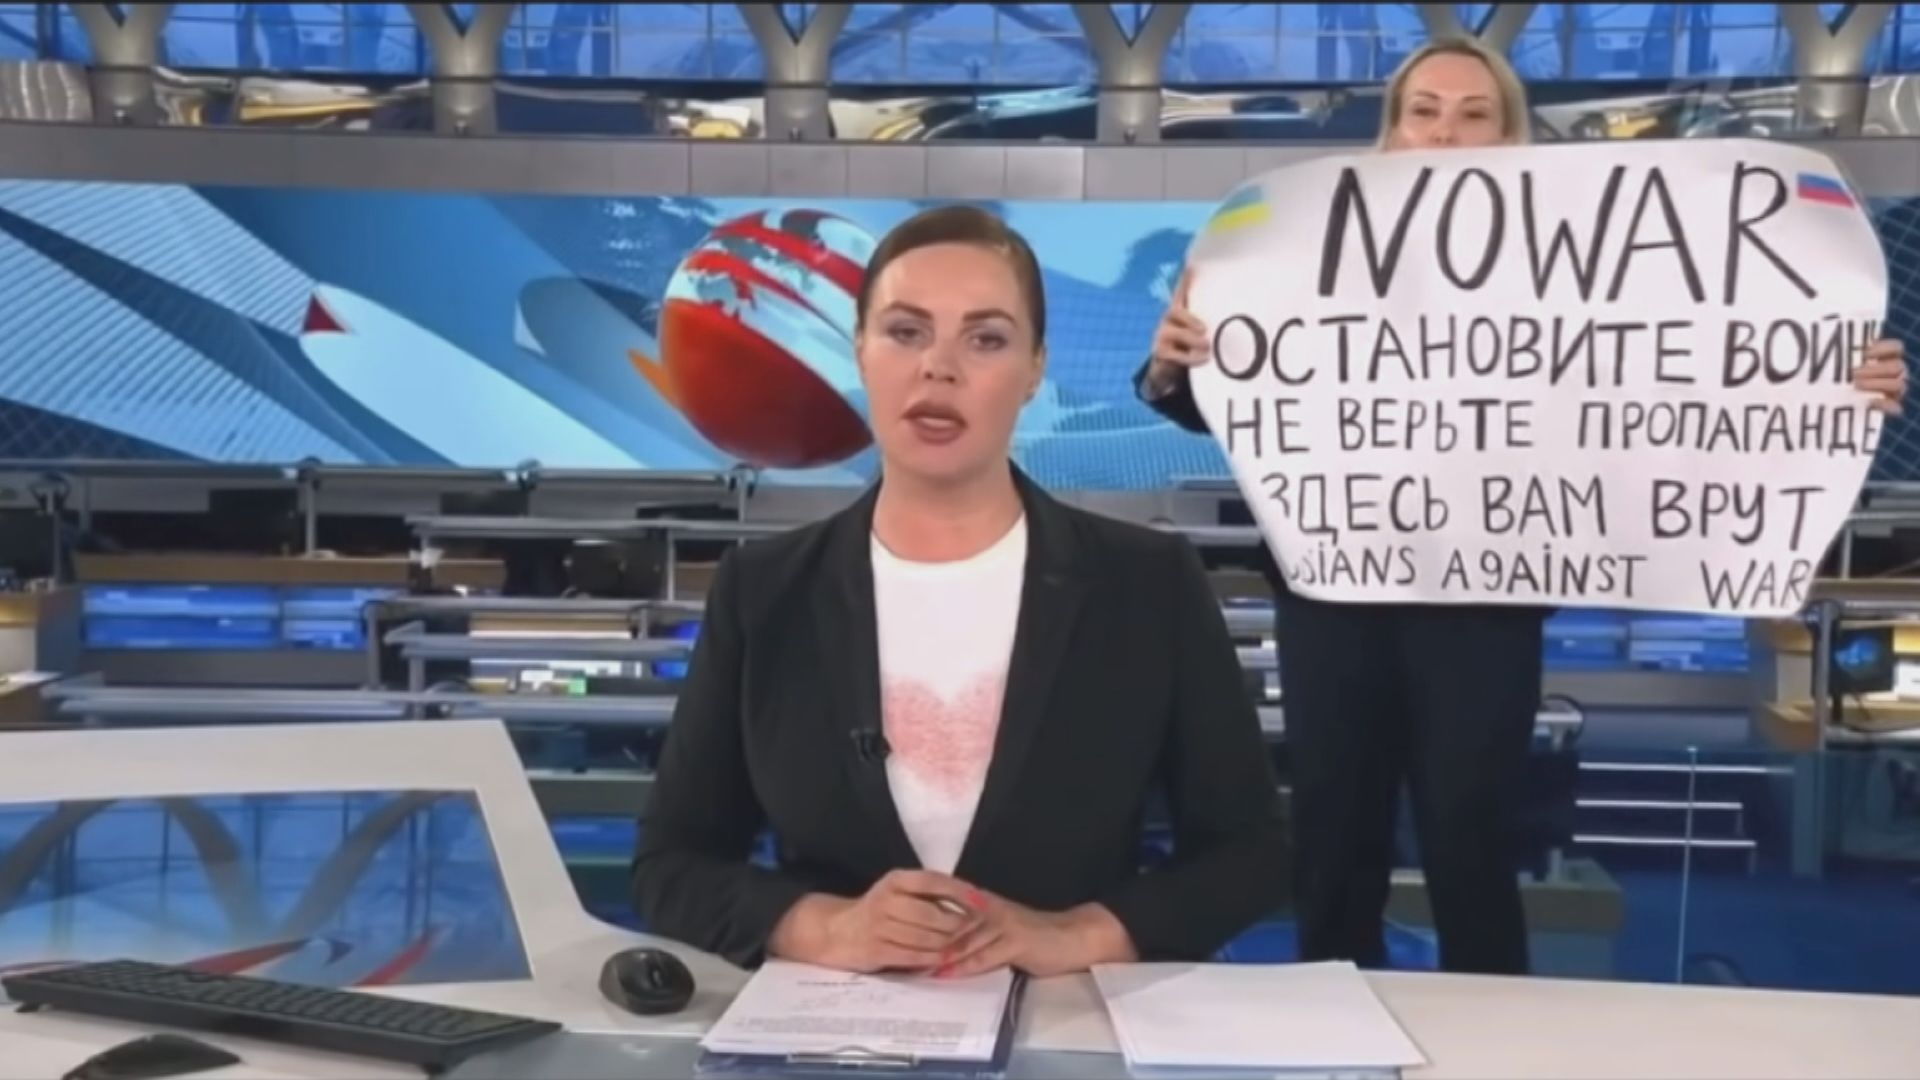 俄羅斯國營電視台員工直播期間展示反戰標語